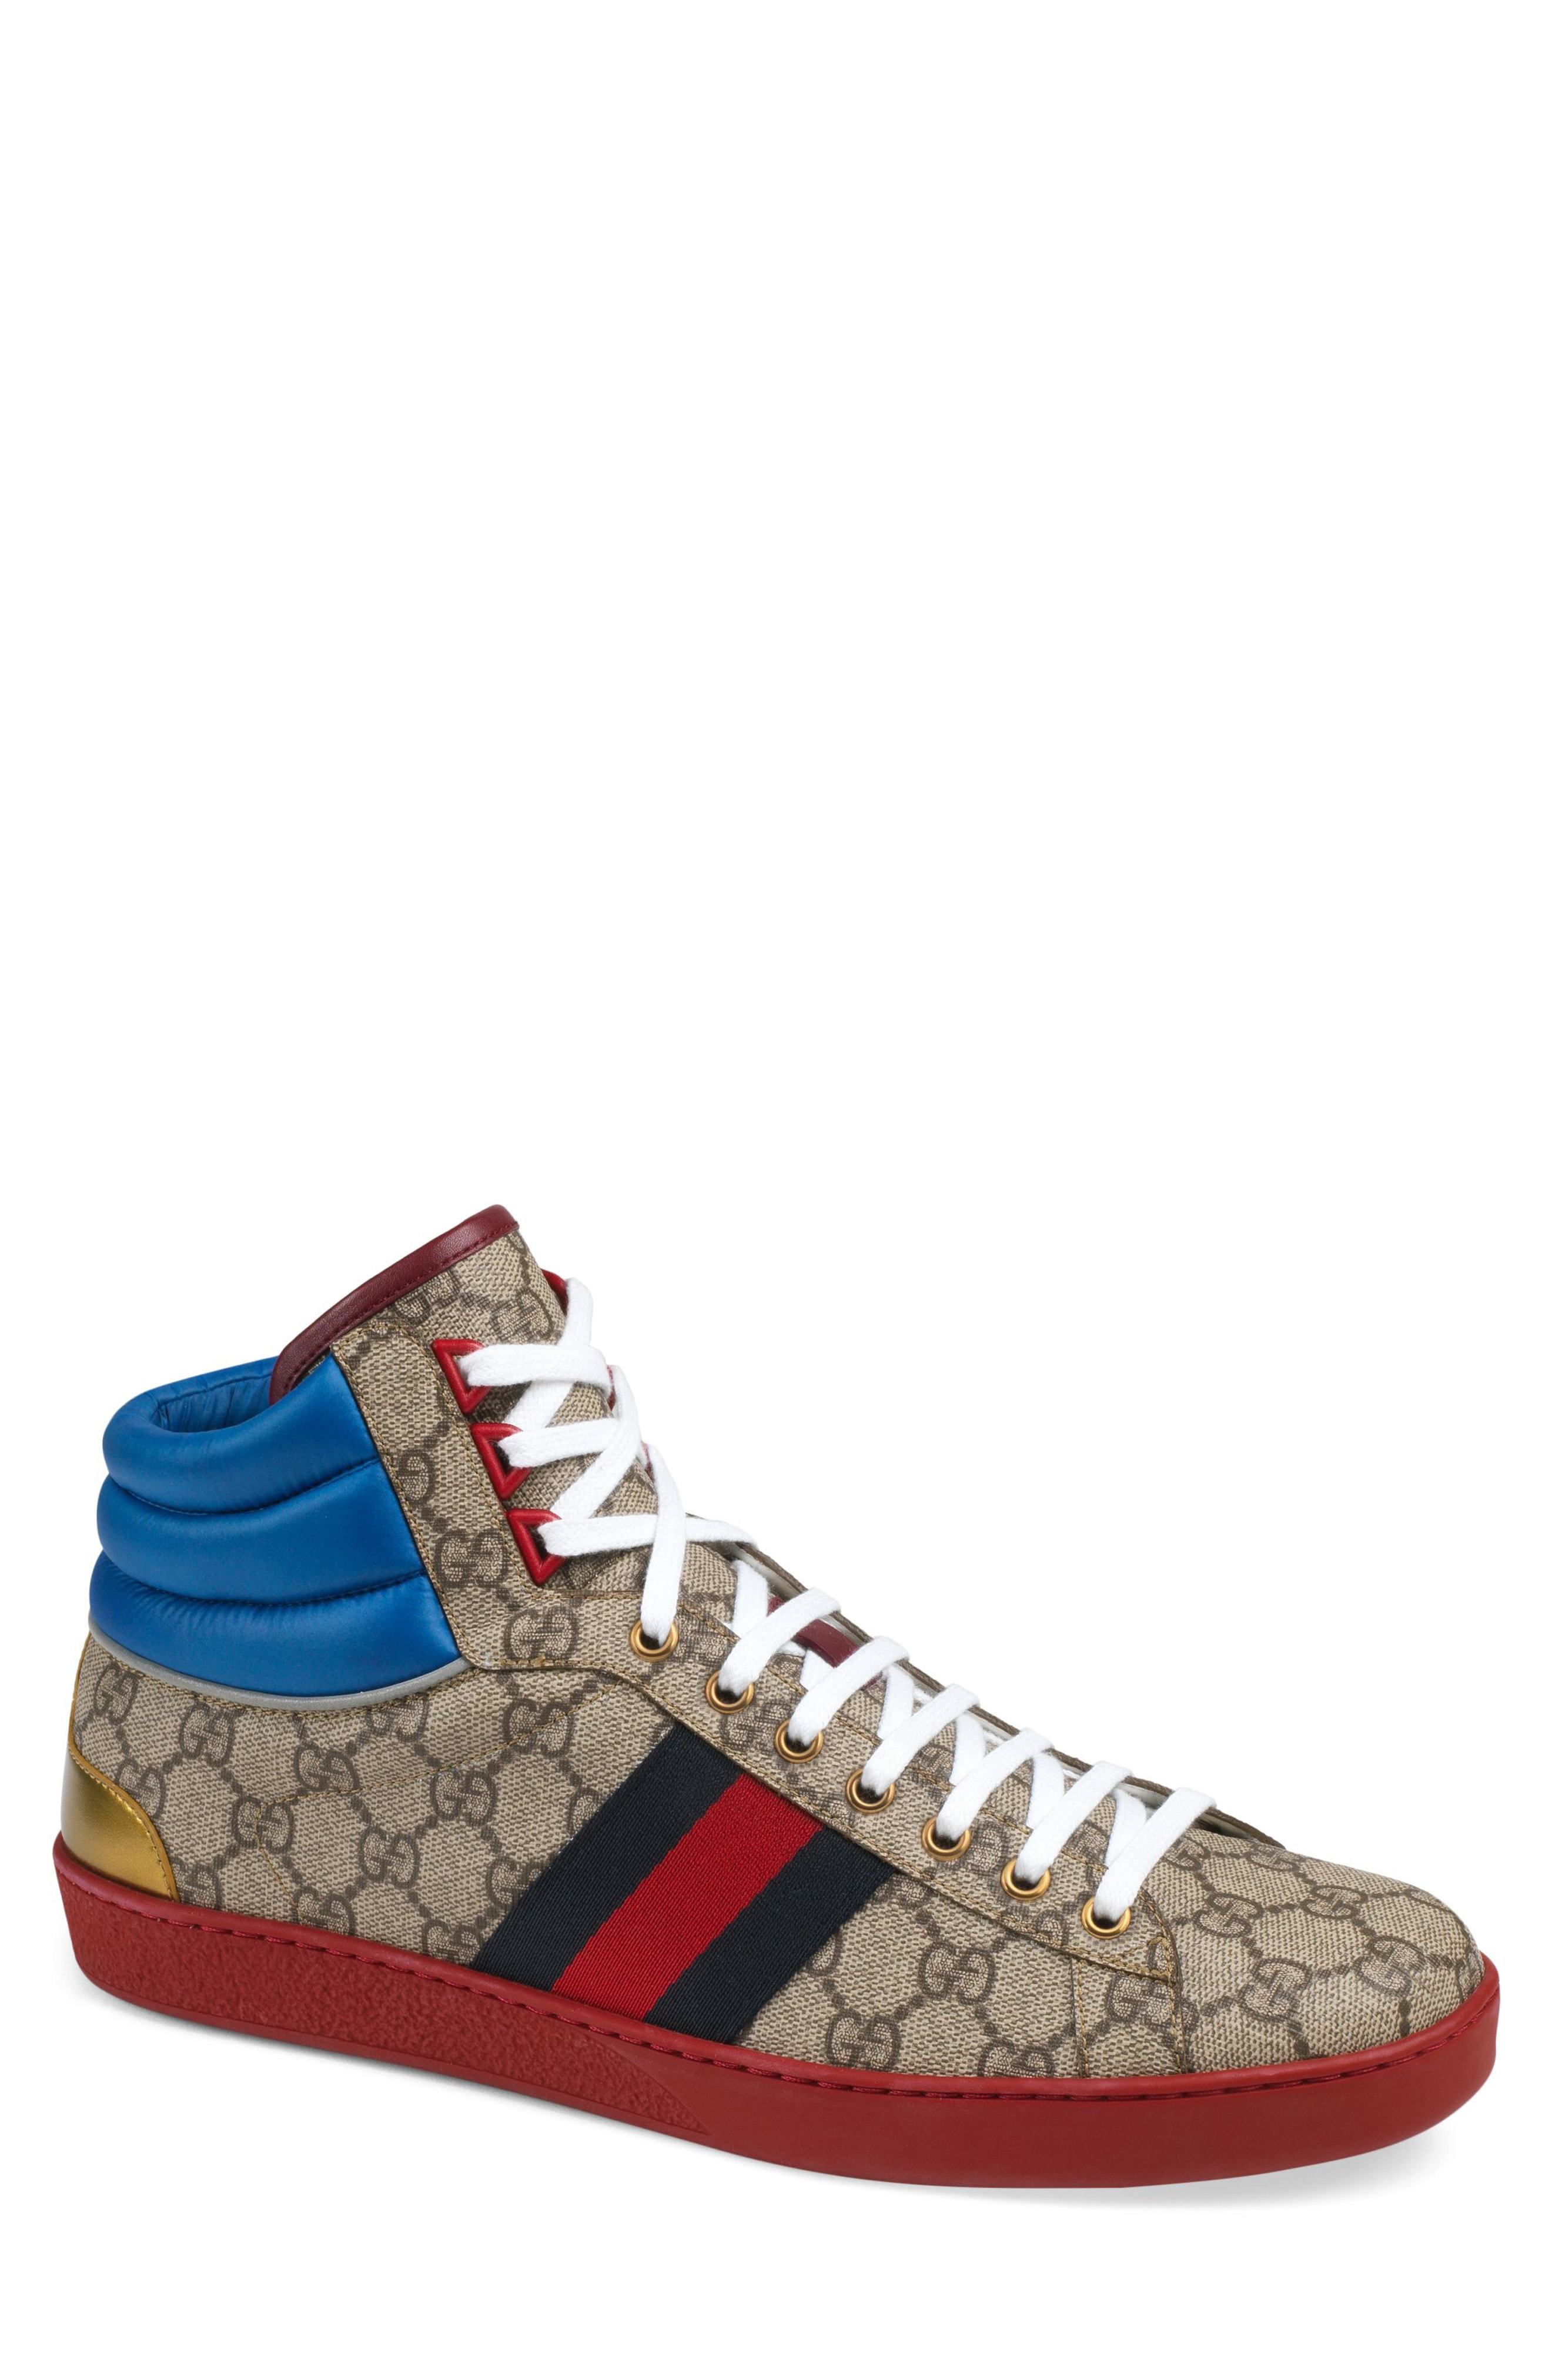 Gucci Nike Supreme Air Jordan High Top Shoes Sneakers - Tagotee